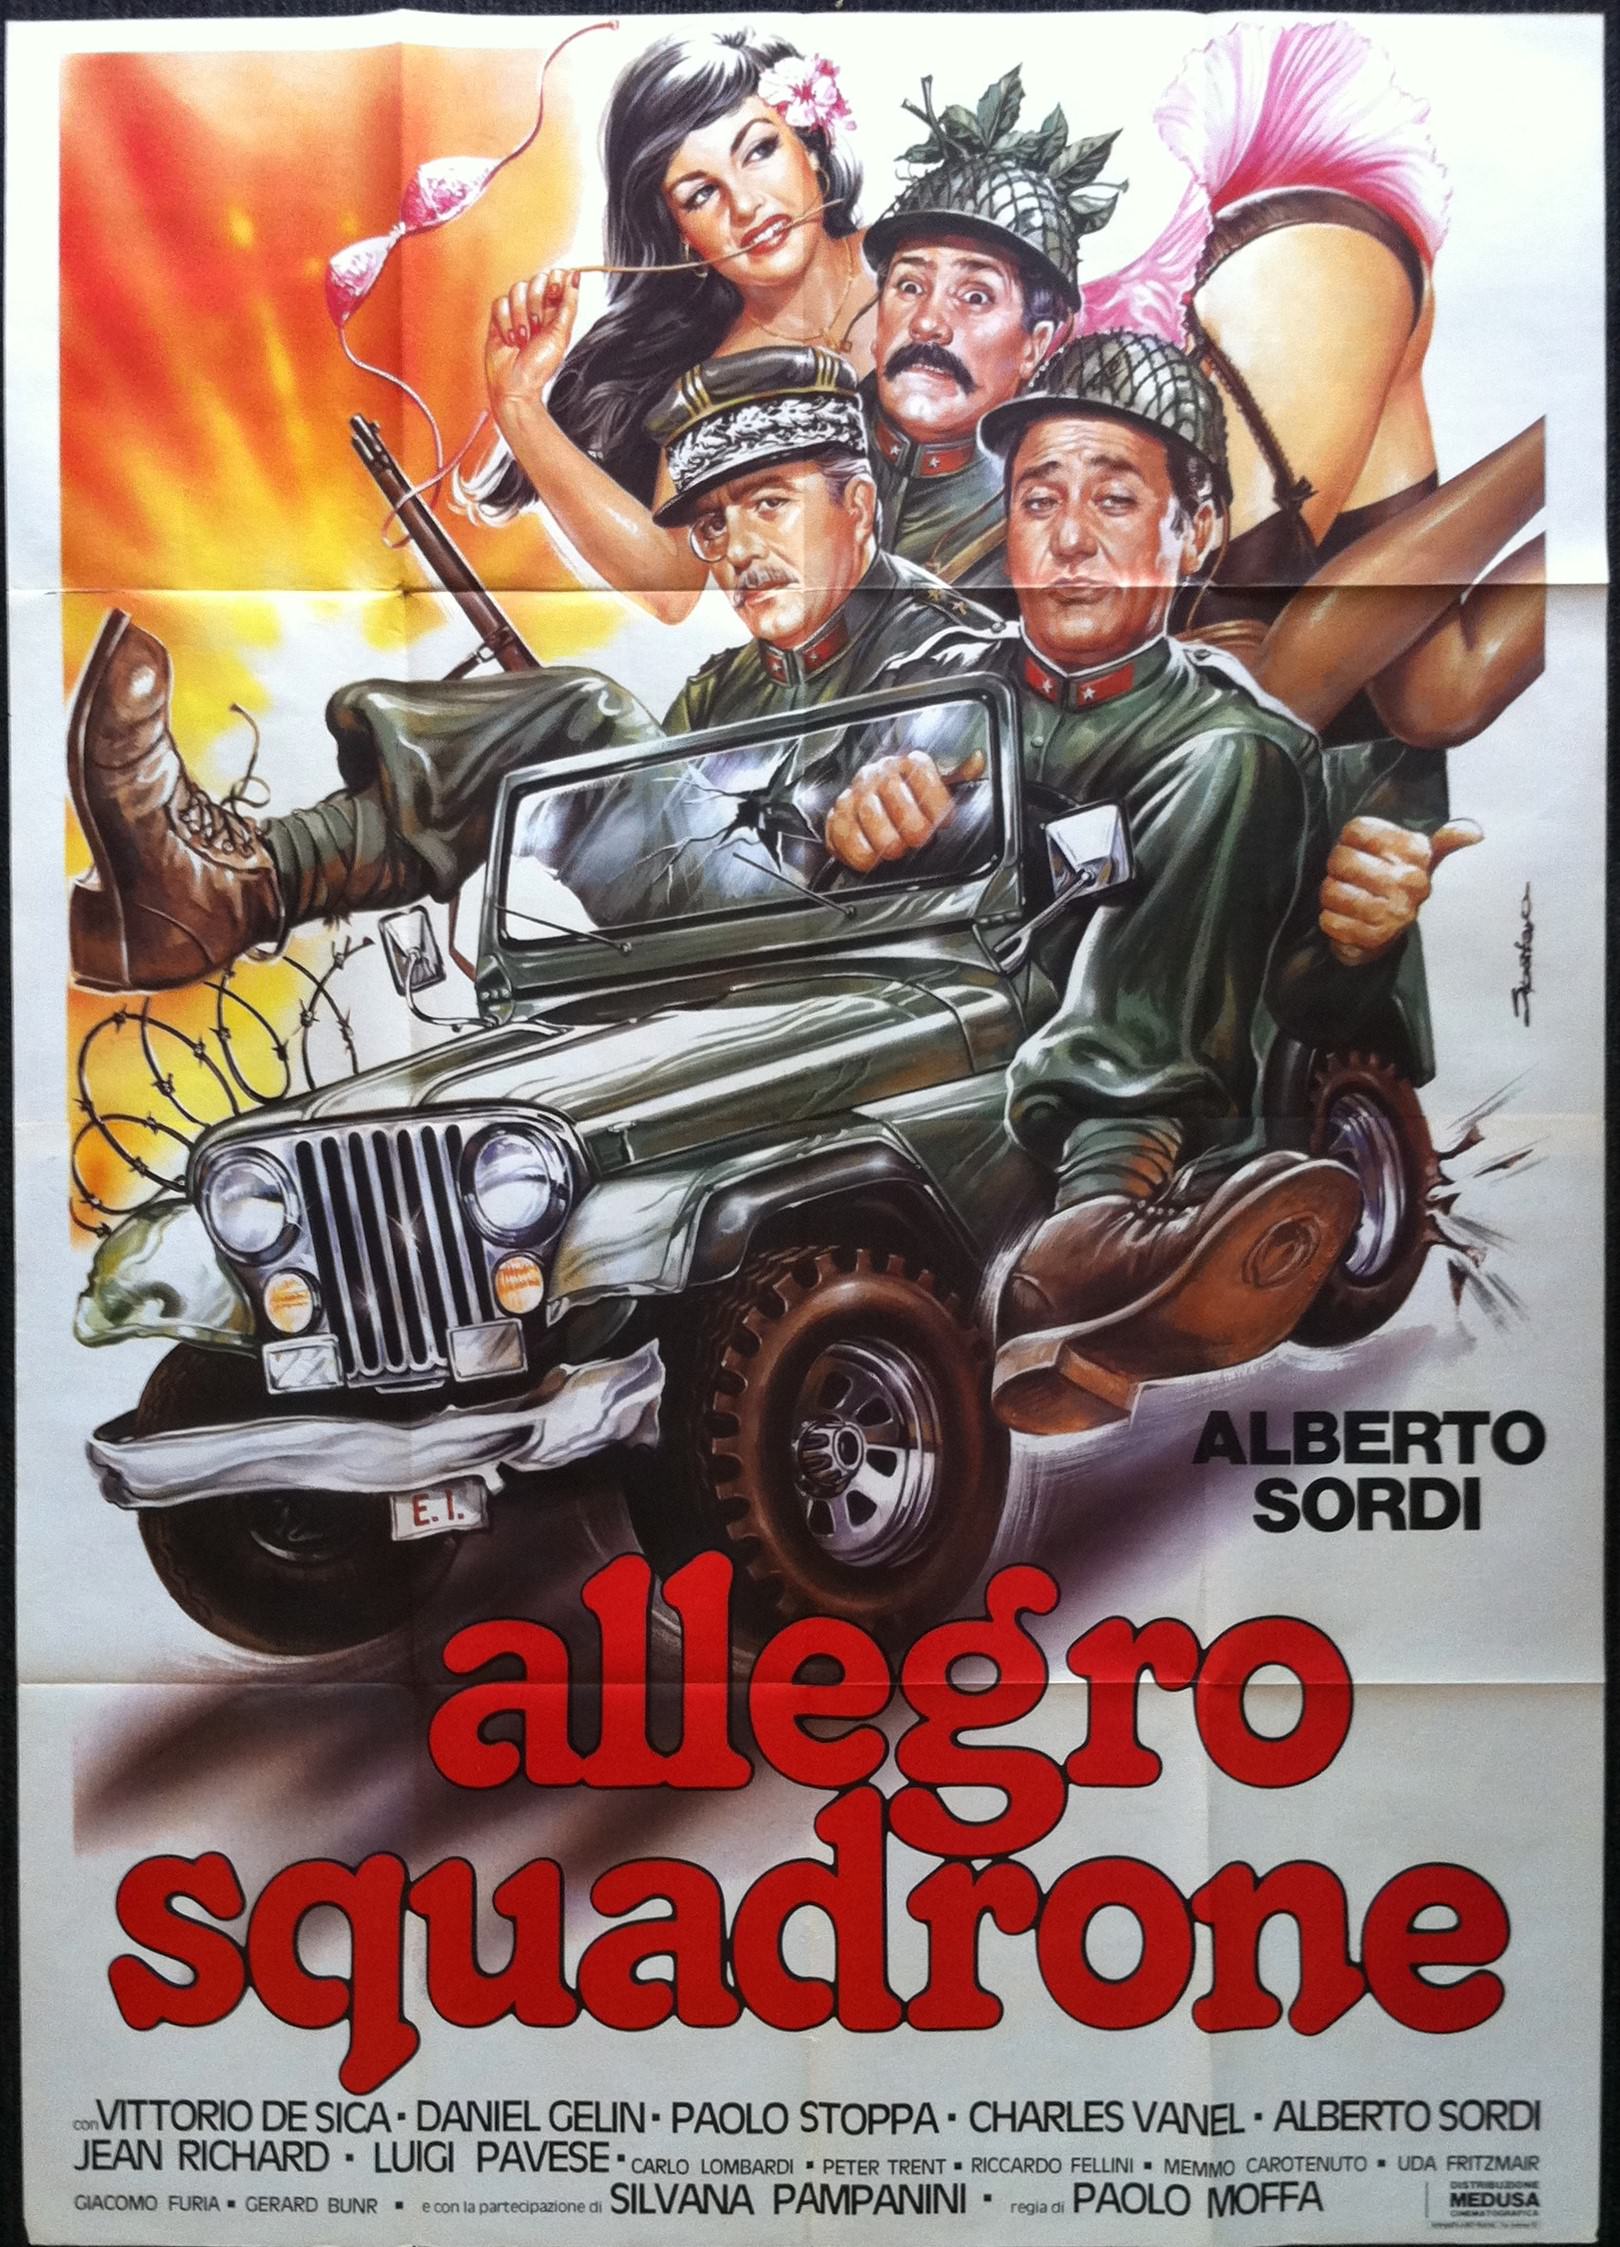 Allegro Squadrone